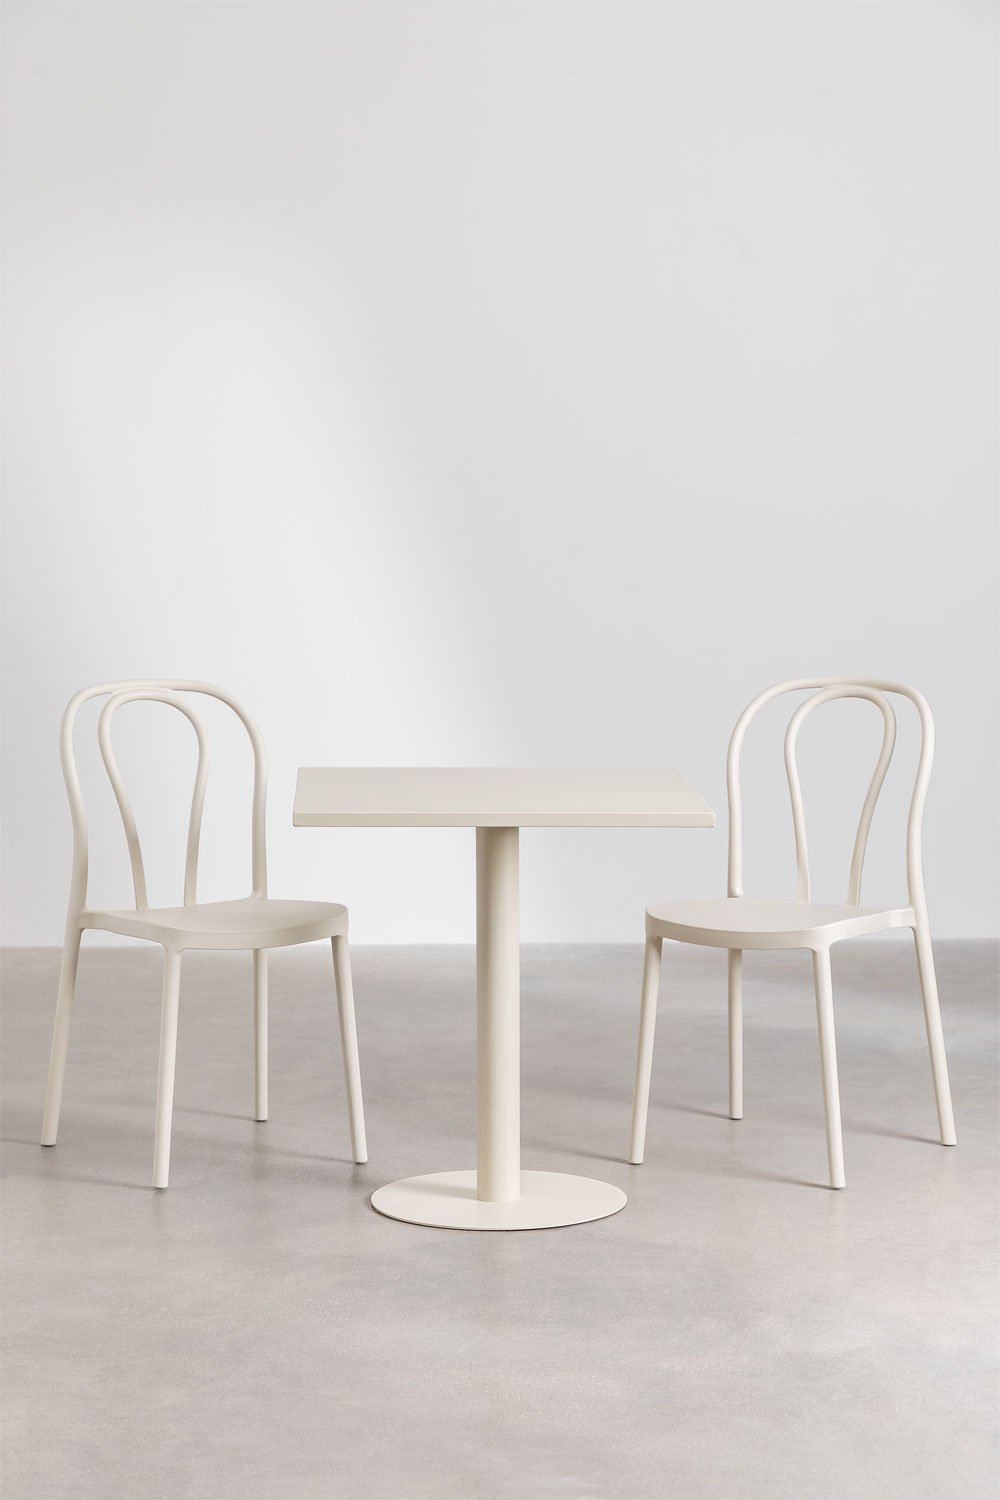 Tuinset met een vierkante tafel 70x70 cm en 2 stoelen Mizzi, galerij beeld 1